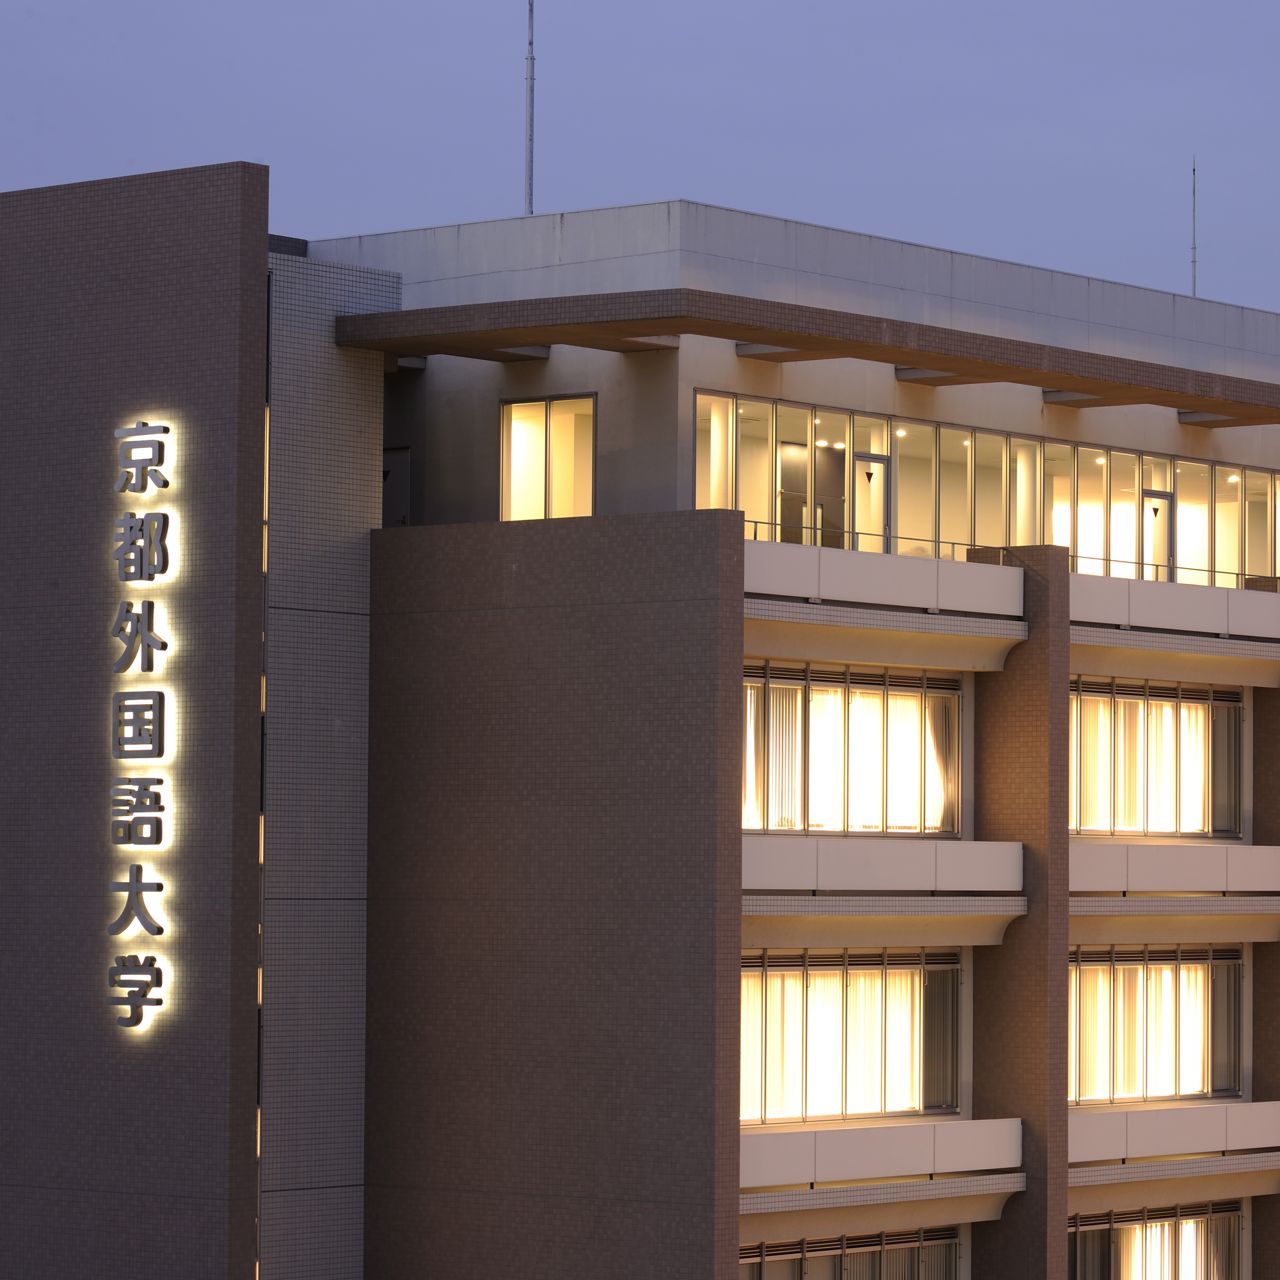 京都外国語短期大学のオープンキャンパス